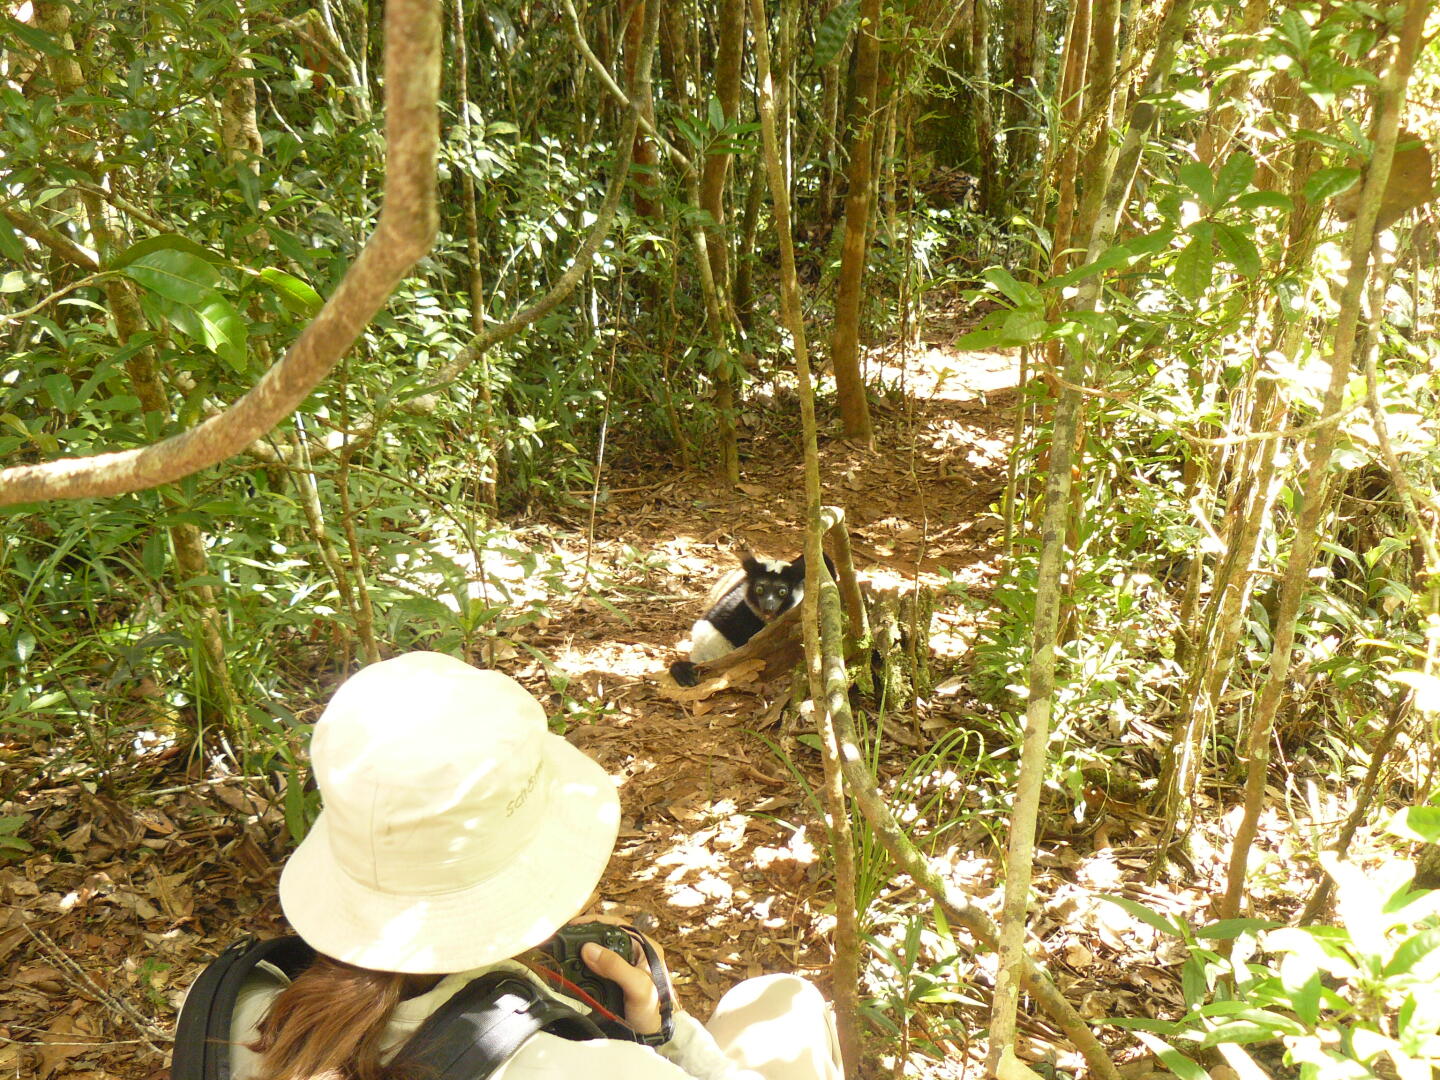 Ganz selten kommen die Indris auf den
Waldboden, und daß sie dabei so nah dran sind, ist wirklich ein
Glücksfall. 